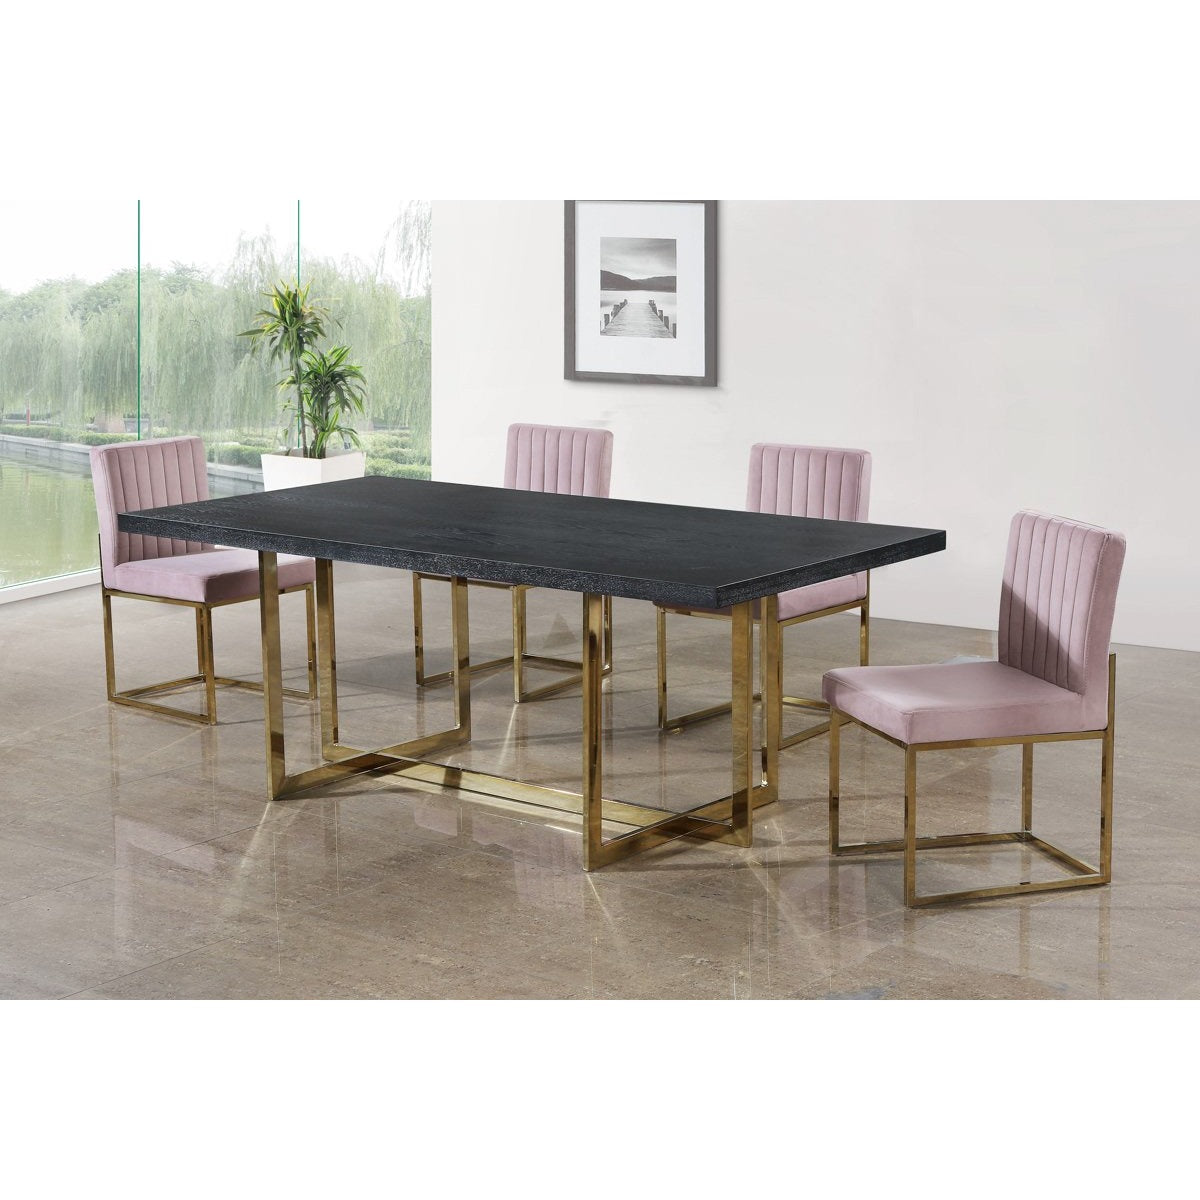 Meridian Furniture Giselle Pink Velvet Dining Chair-Minimal & Modern